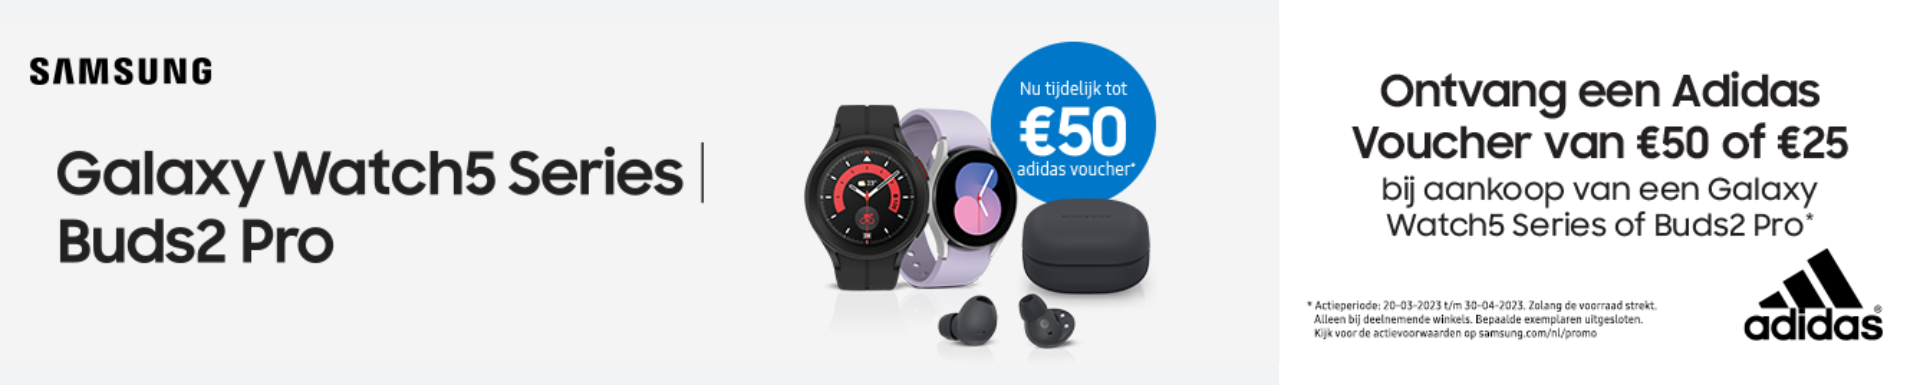 Bij aankoop van Galaxy Watch5 Series of Buds2 Pro een adidas voucher tot €50 cadeau